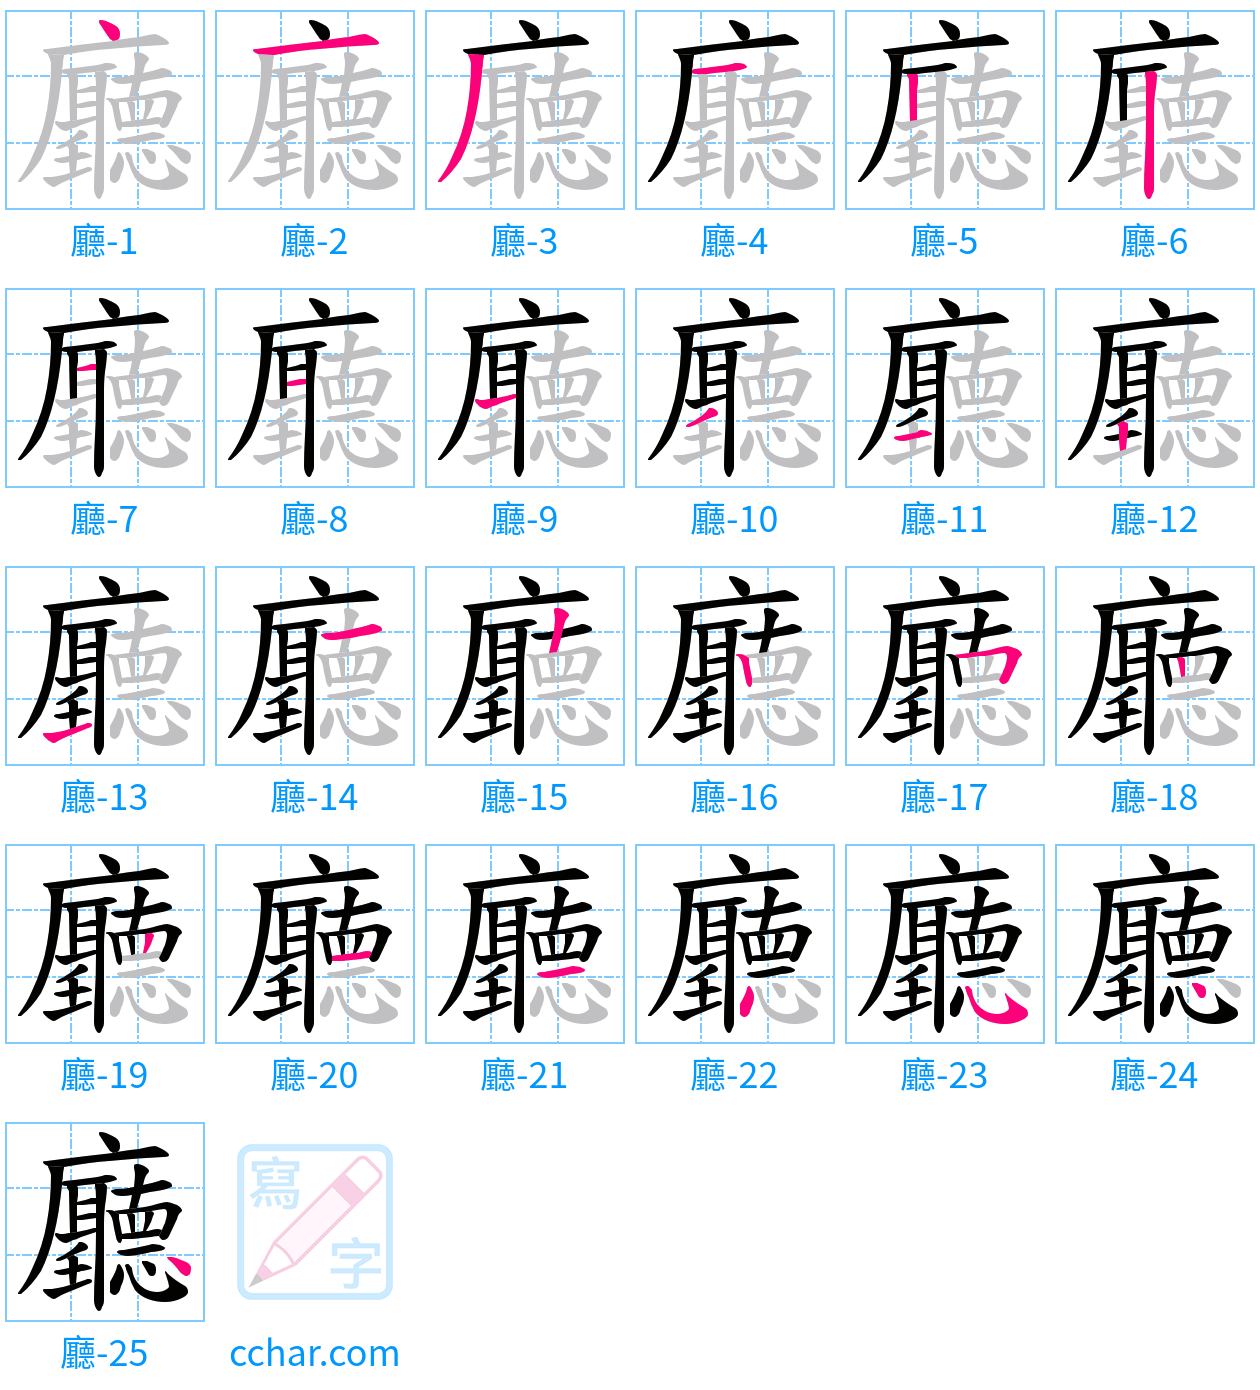 廳 stroke order step-by-step diagram